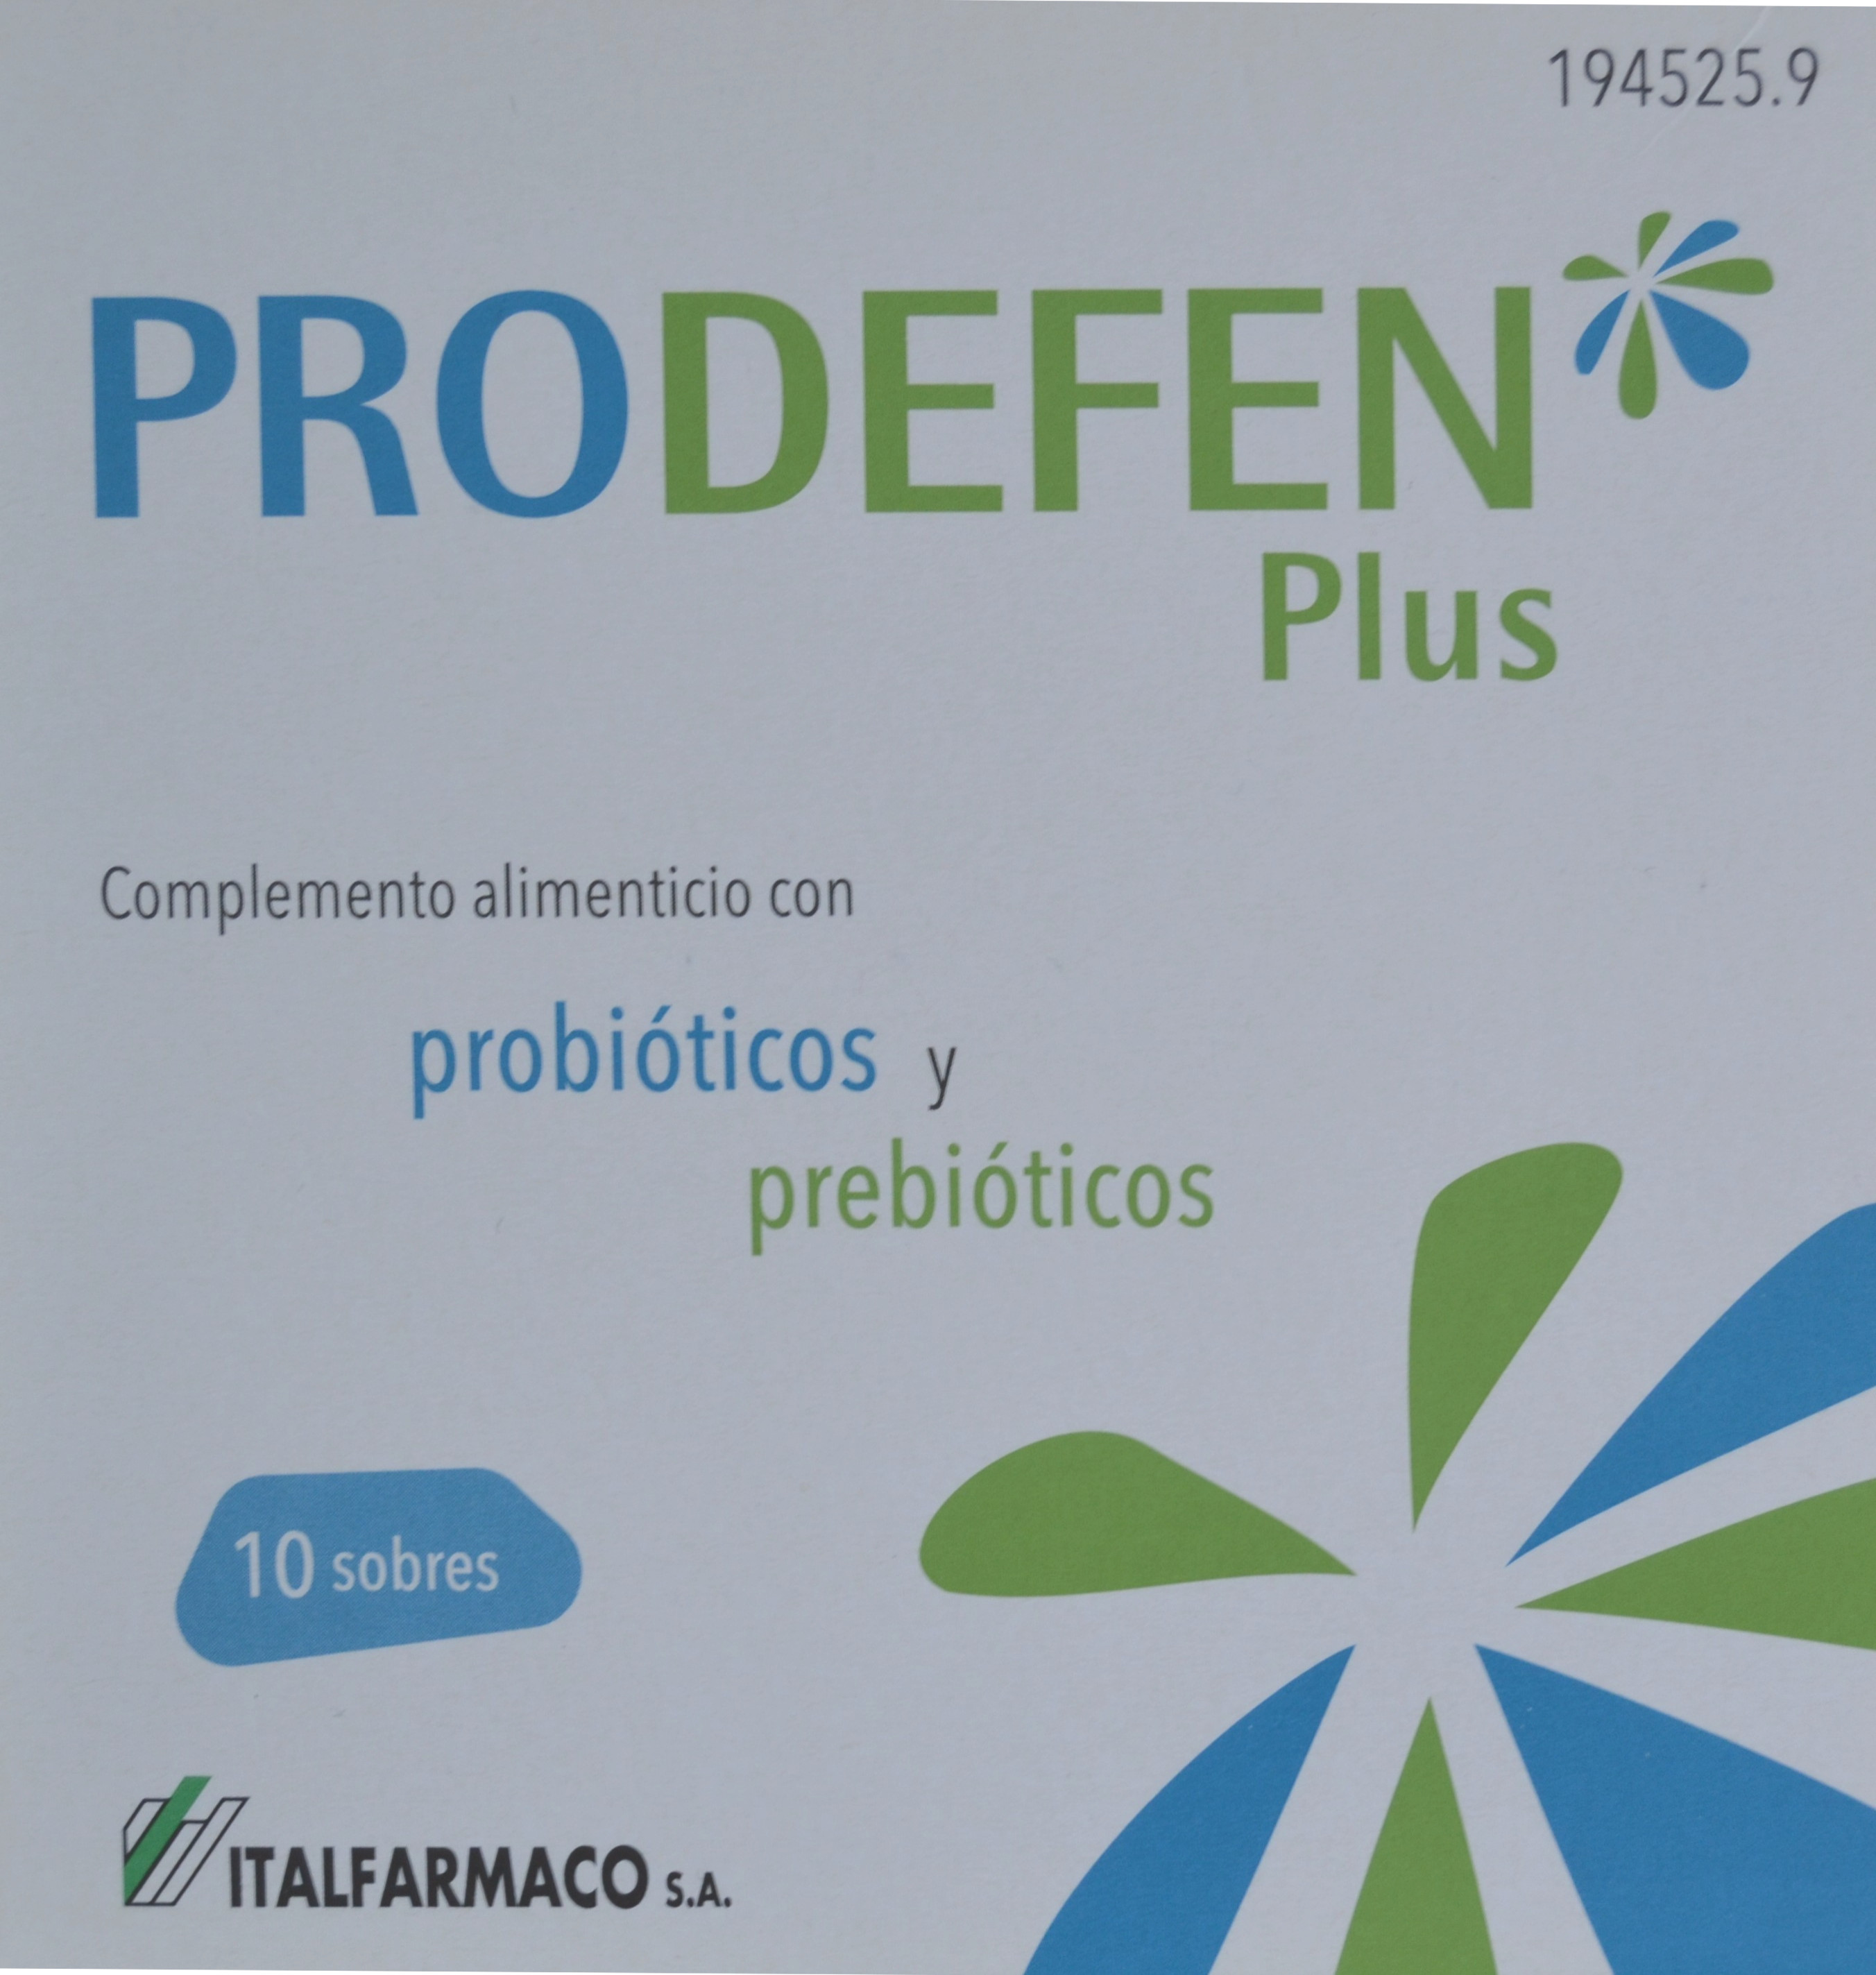 Prodefen Plus Complemento Alimenticio de Probióticos y Prebióticos.